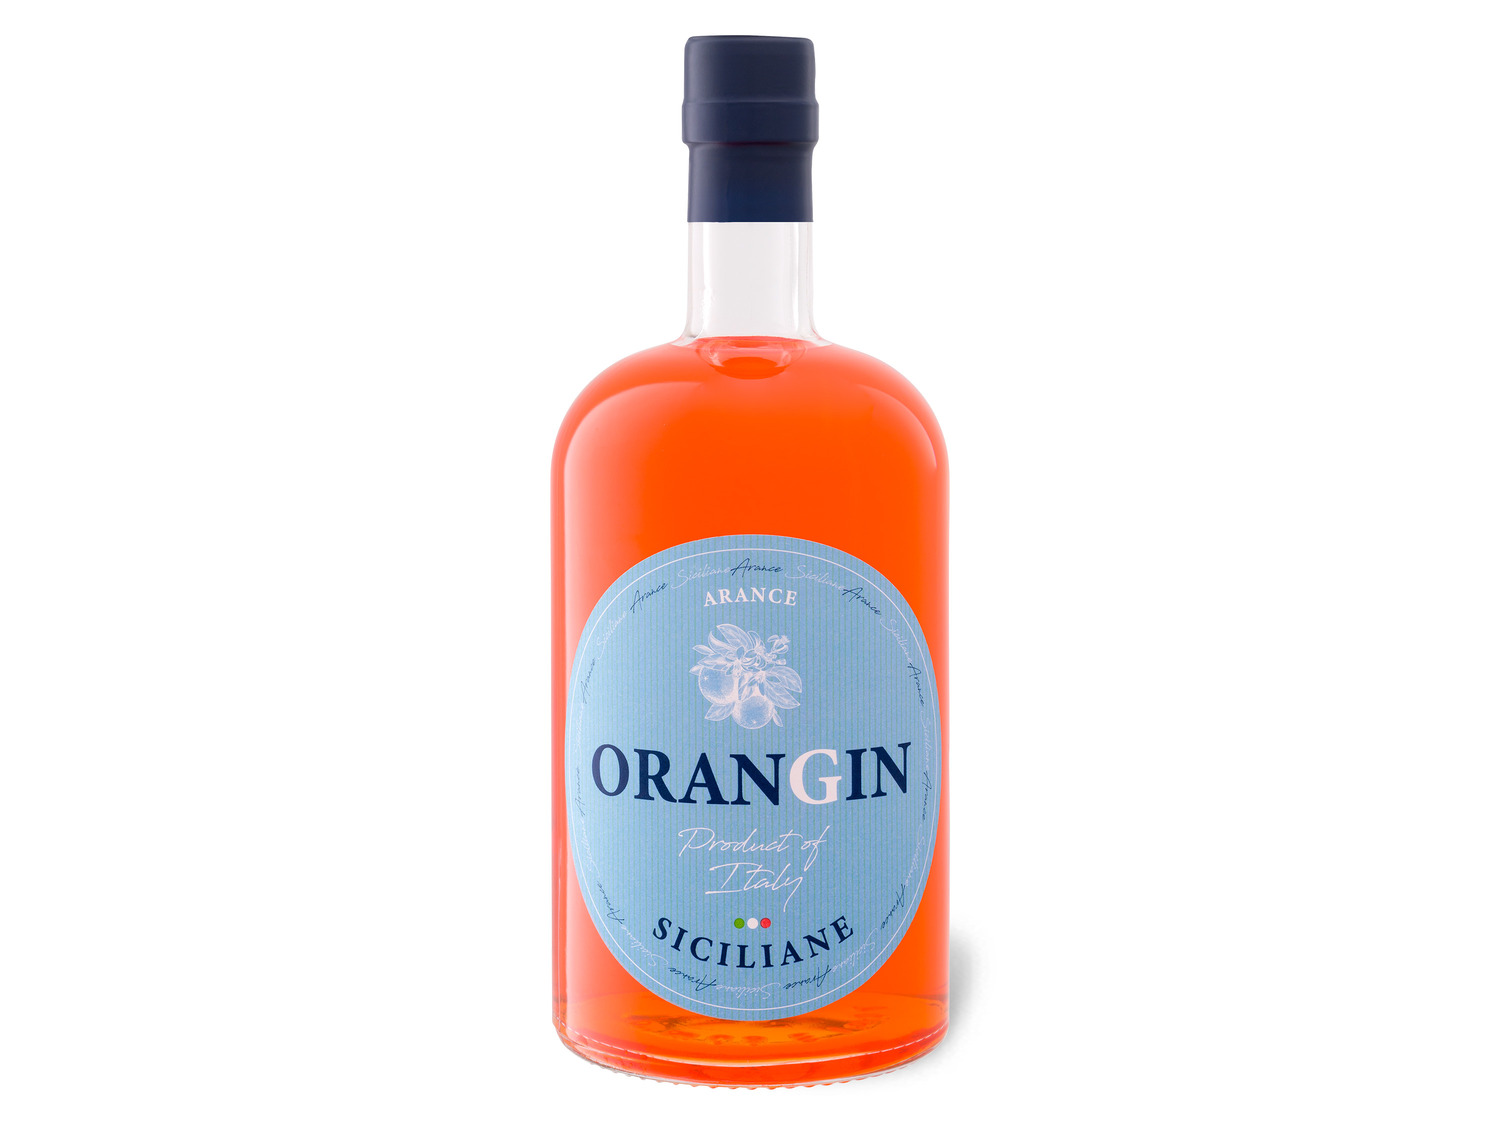 OranGin Siciliane 40% Vol online kaufen | LIDL